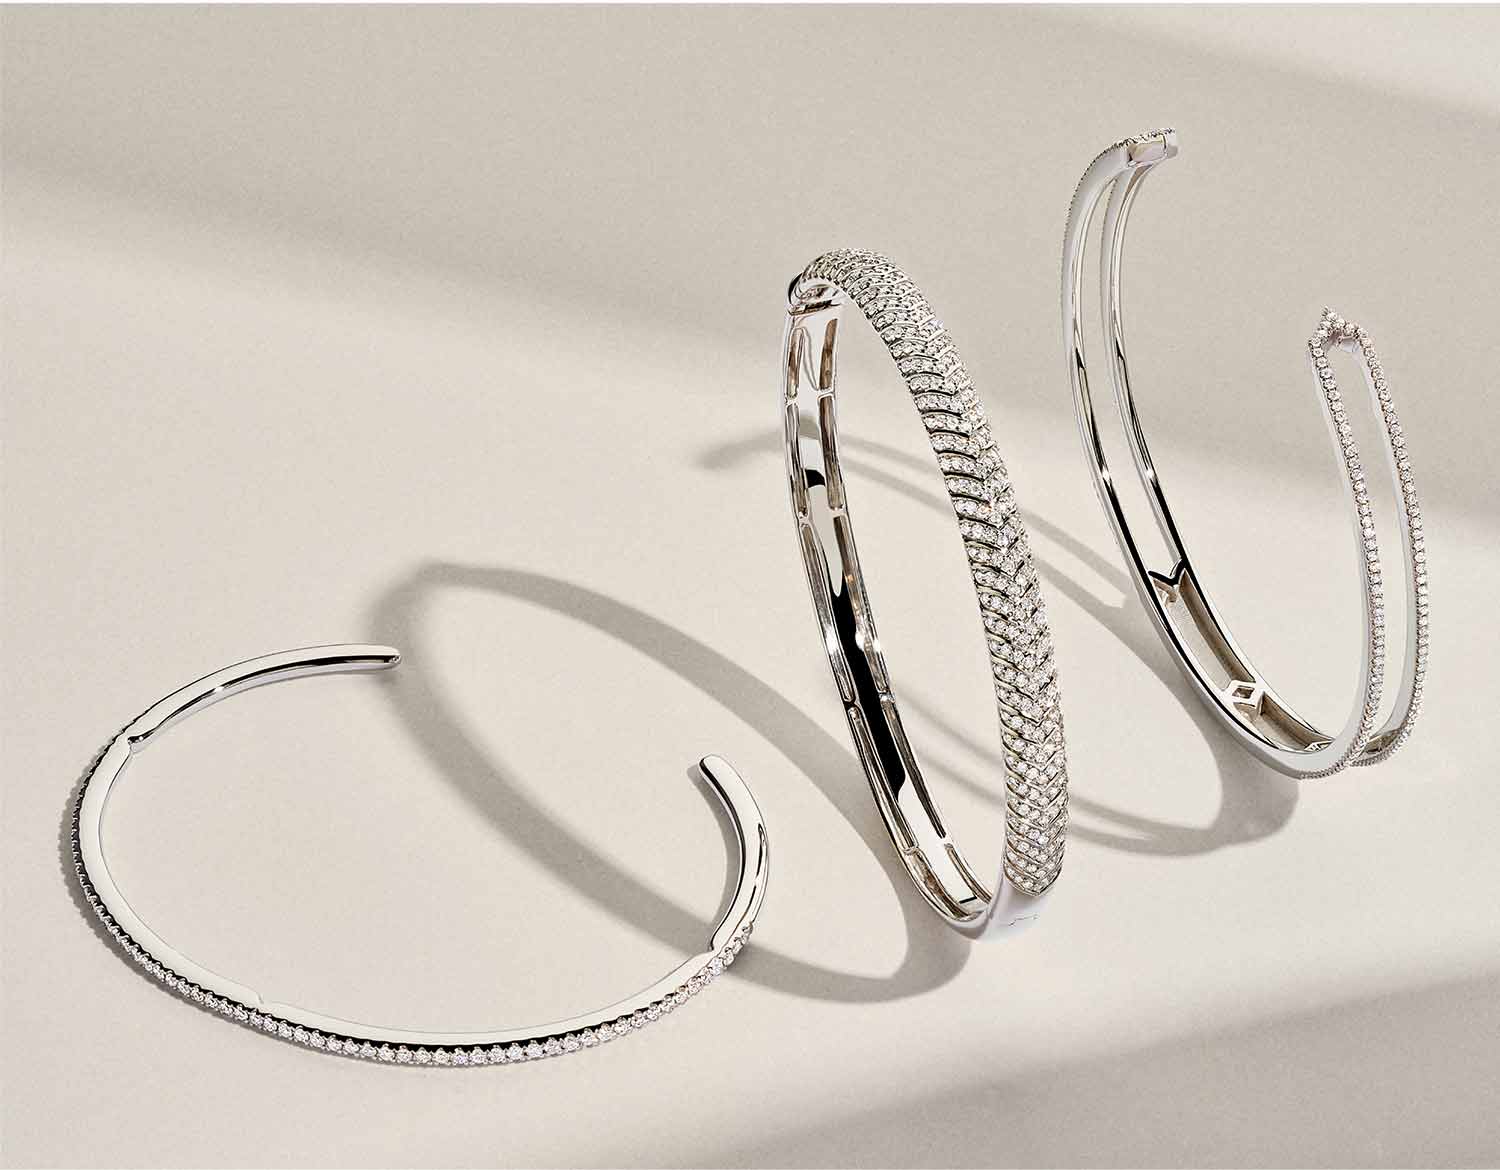 Unique diamond cuff and bangle bracelets